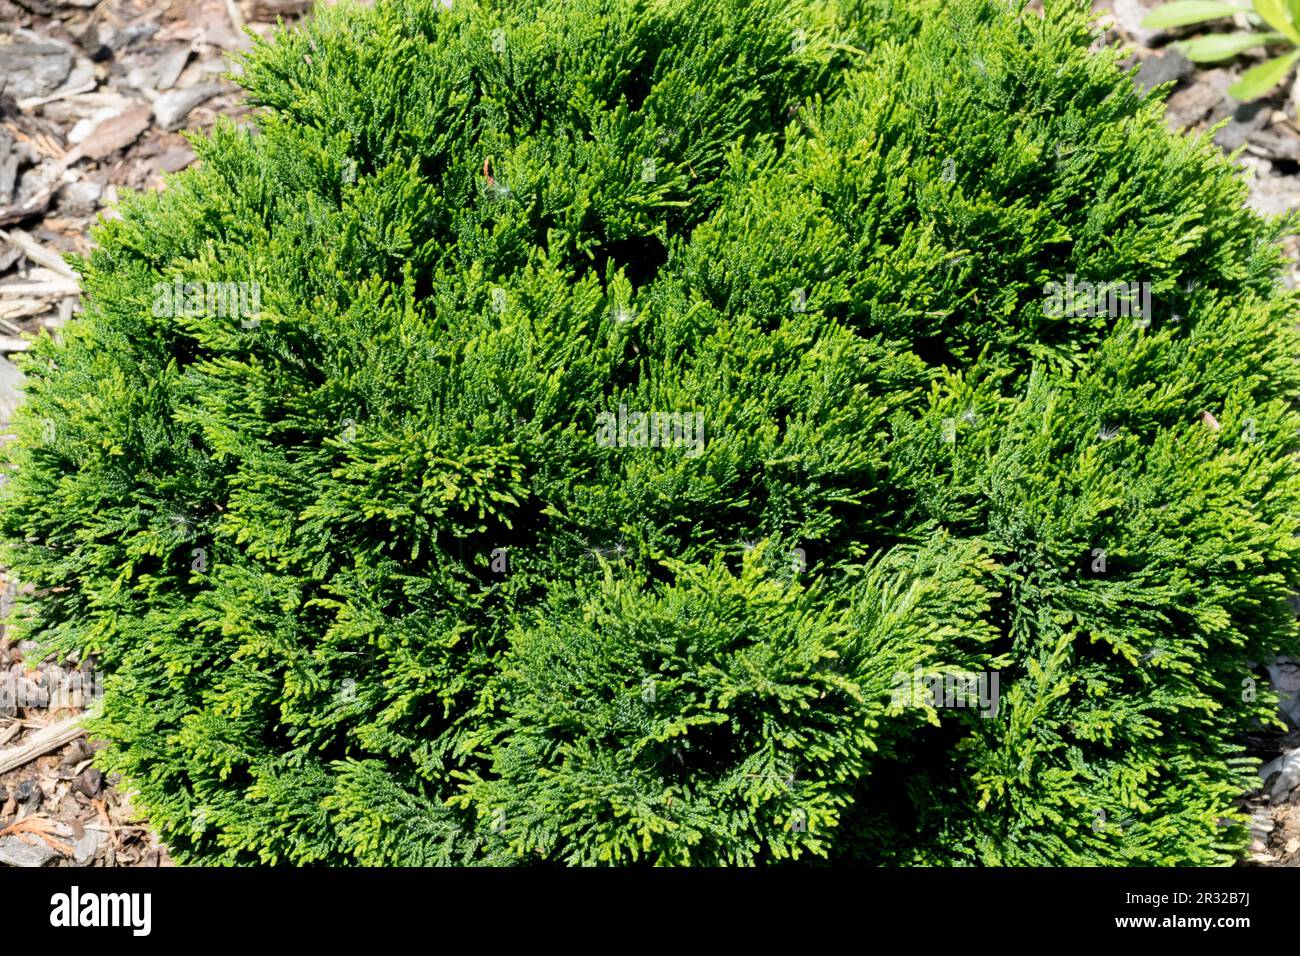 Japanese Cypress, Hinoki Cypress 'Densa', Chamaecyparis obtusa 'Densa' Stock Photo